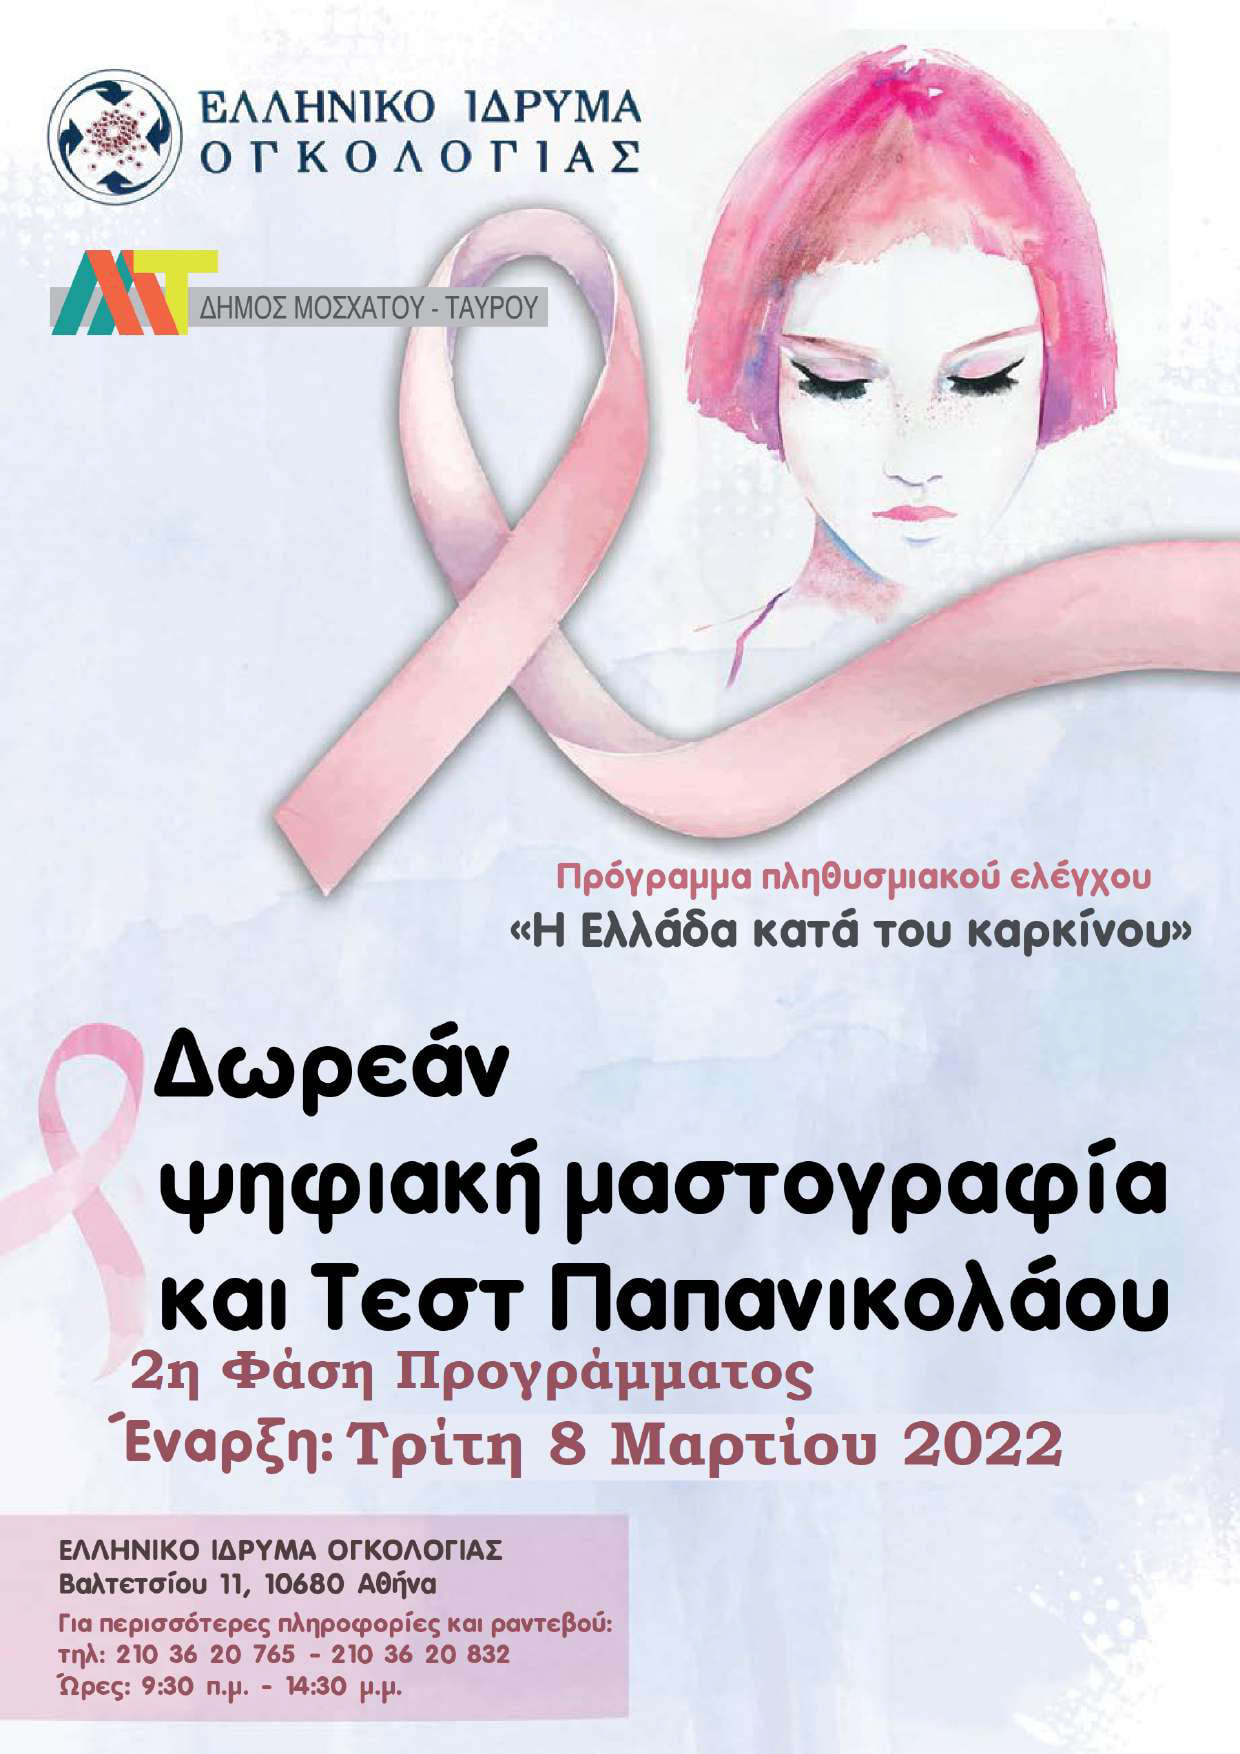 Δωρεάν Τεστ Παπ και Ψηφιακή Μαστογραφία για γυναίκες 25-70 ετών από τον Δήμο Μοσχάτου-Ταύρου – Έναρξη: 8 Μαρτίου 2022